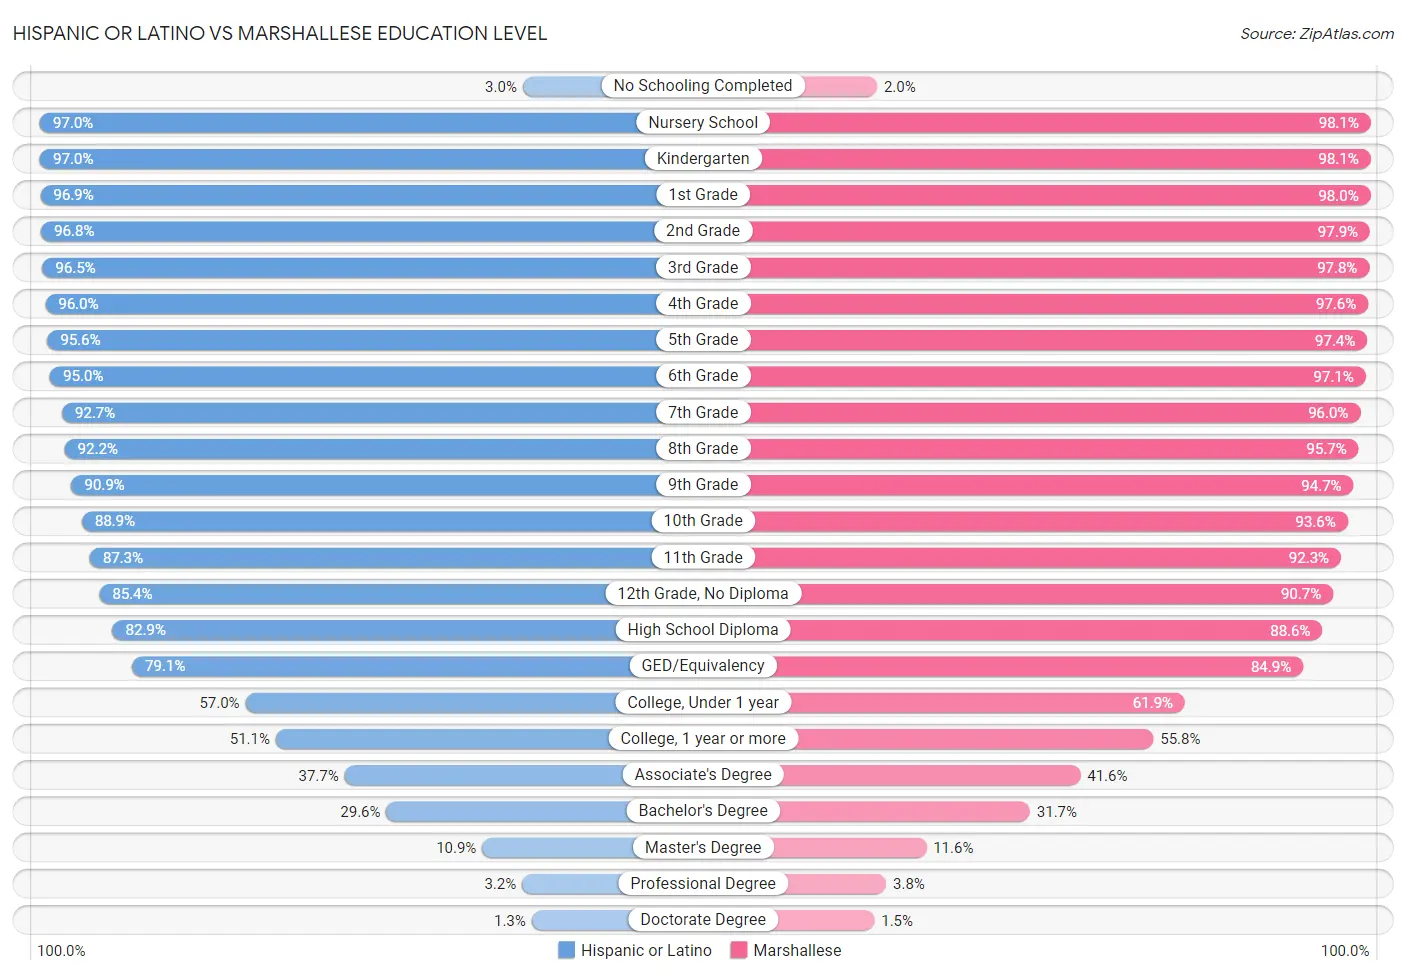 Hispanic or Latino vs Marshallese Education Level